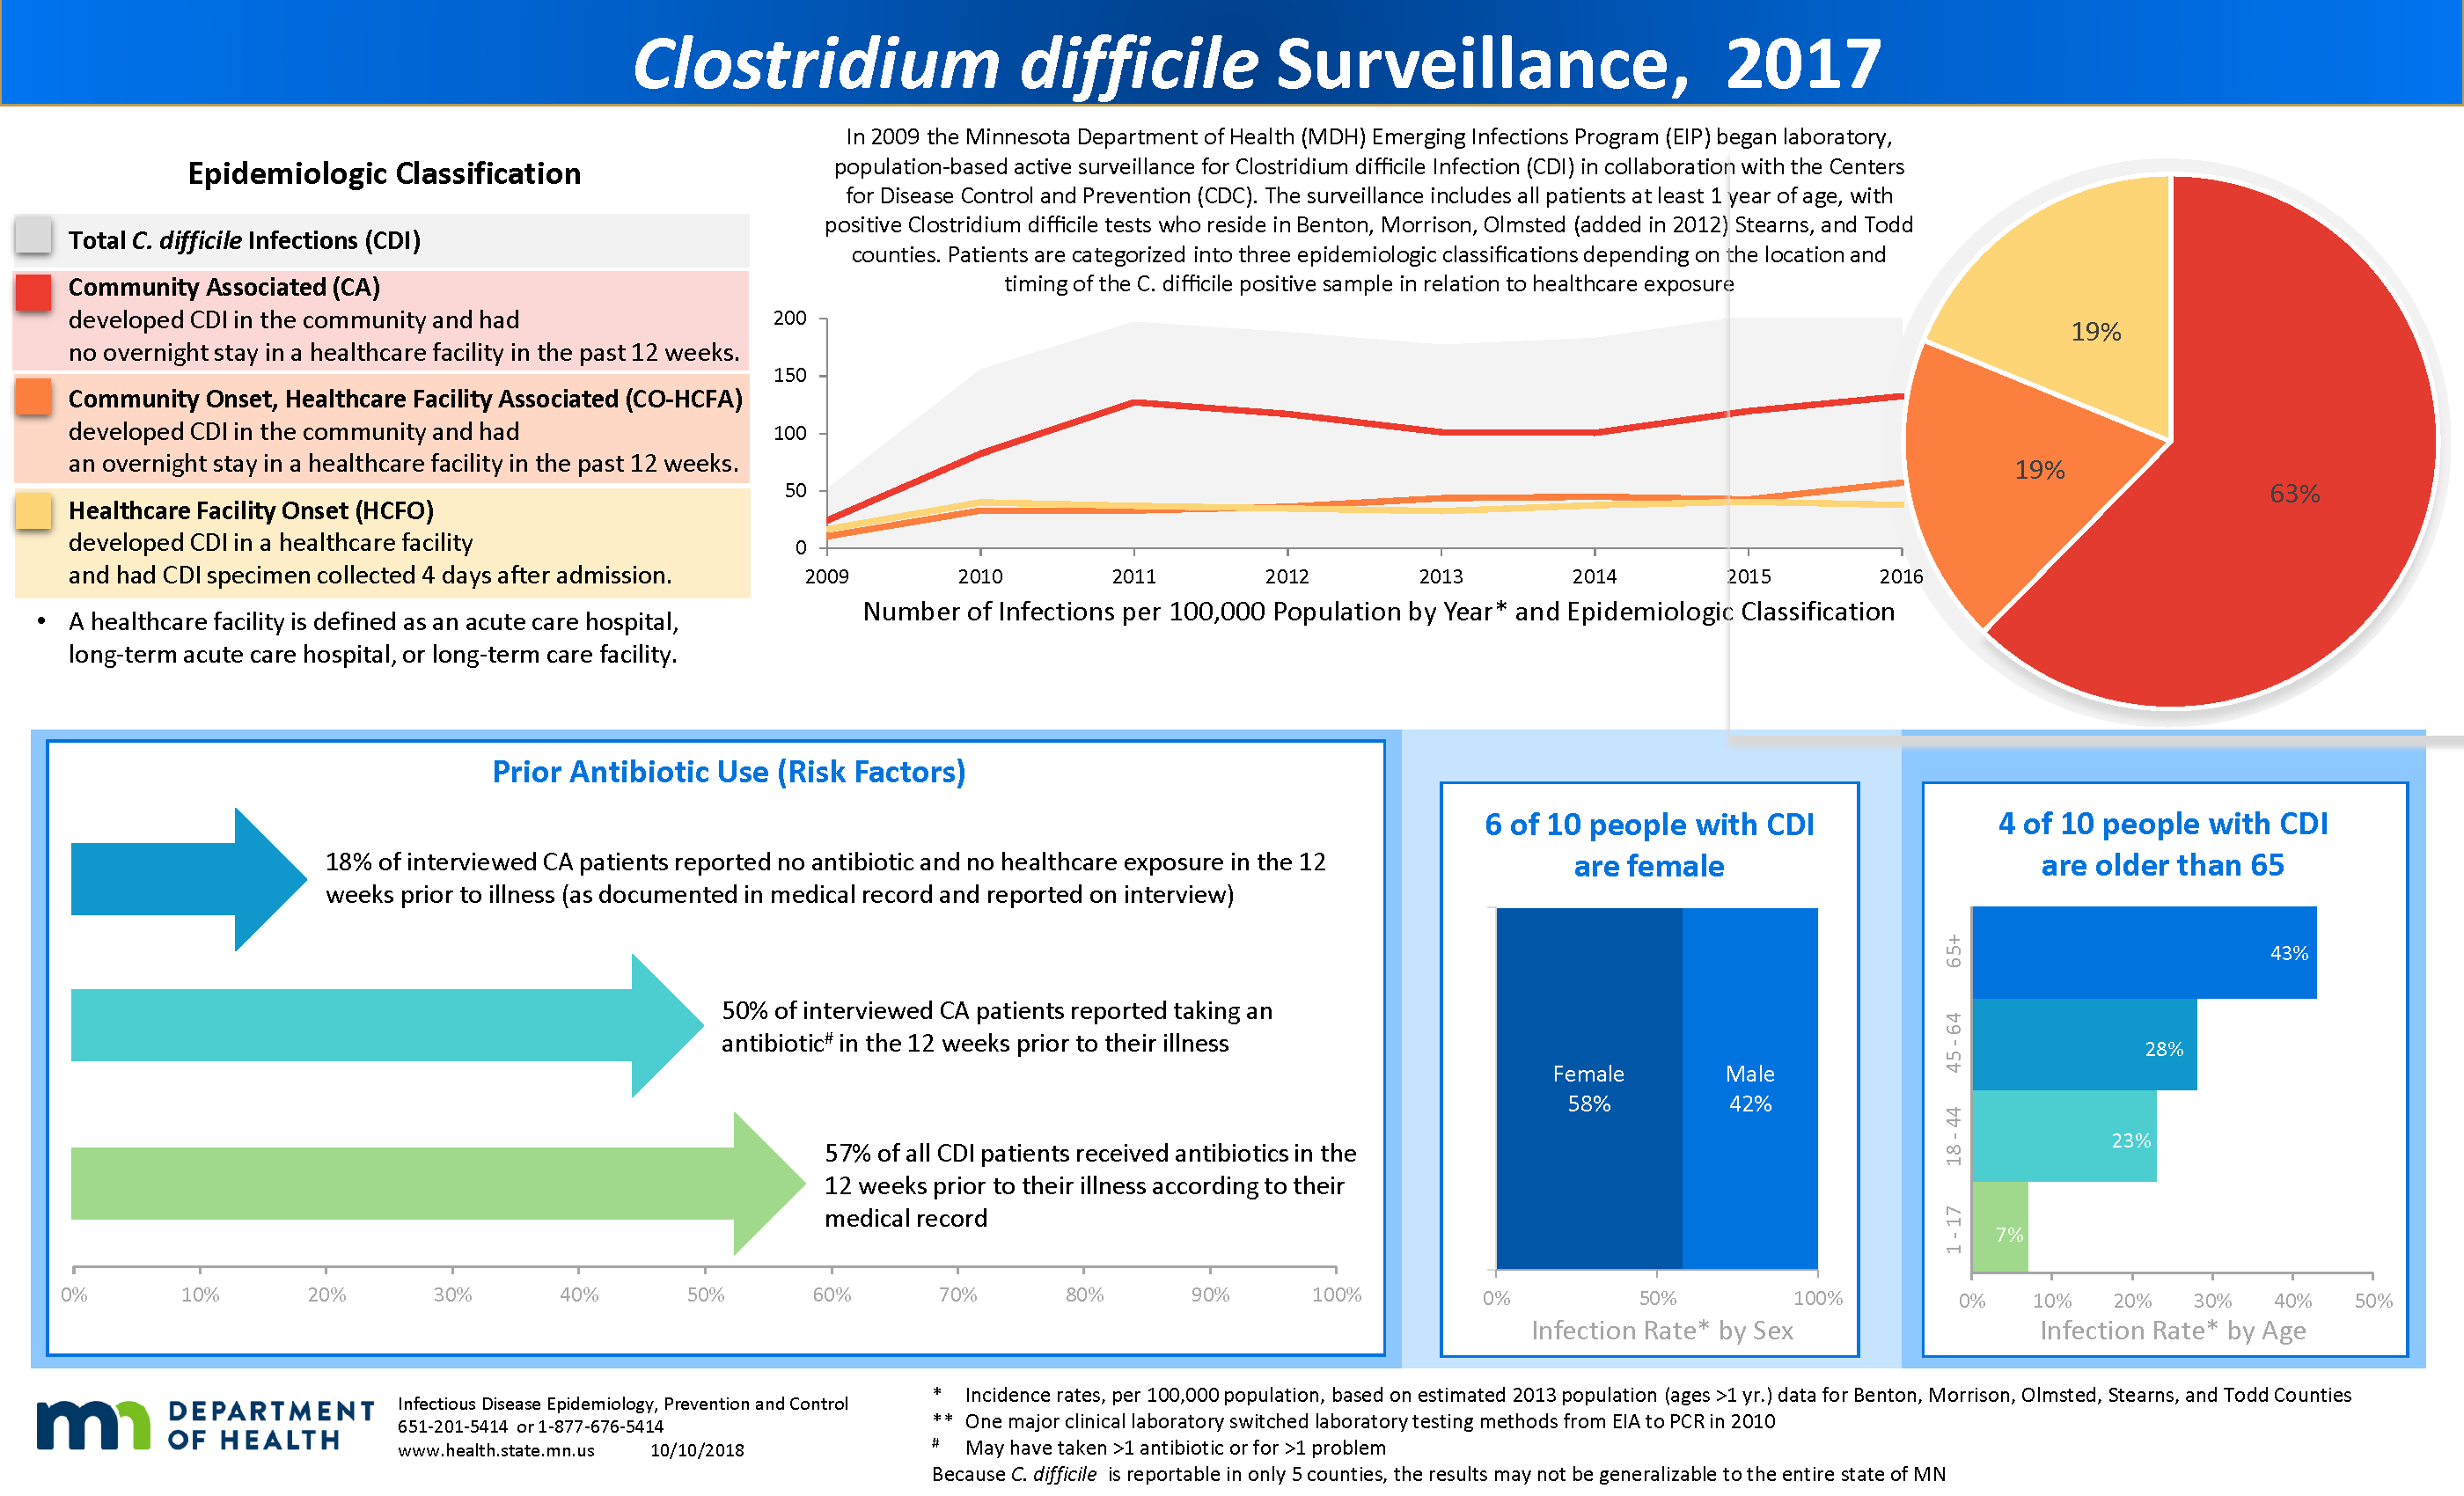 Infographic: Clostridium difficile Sentinel Surveillance